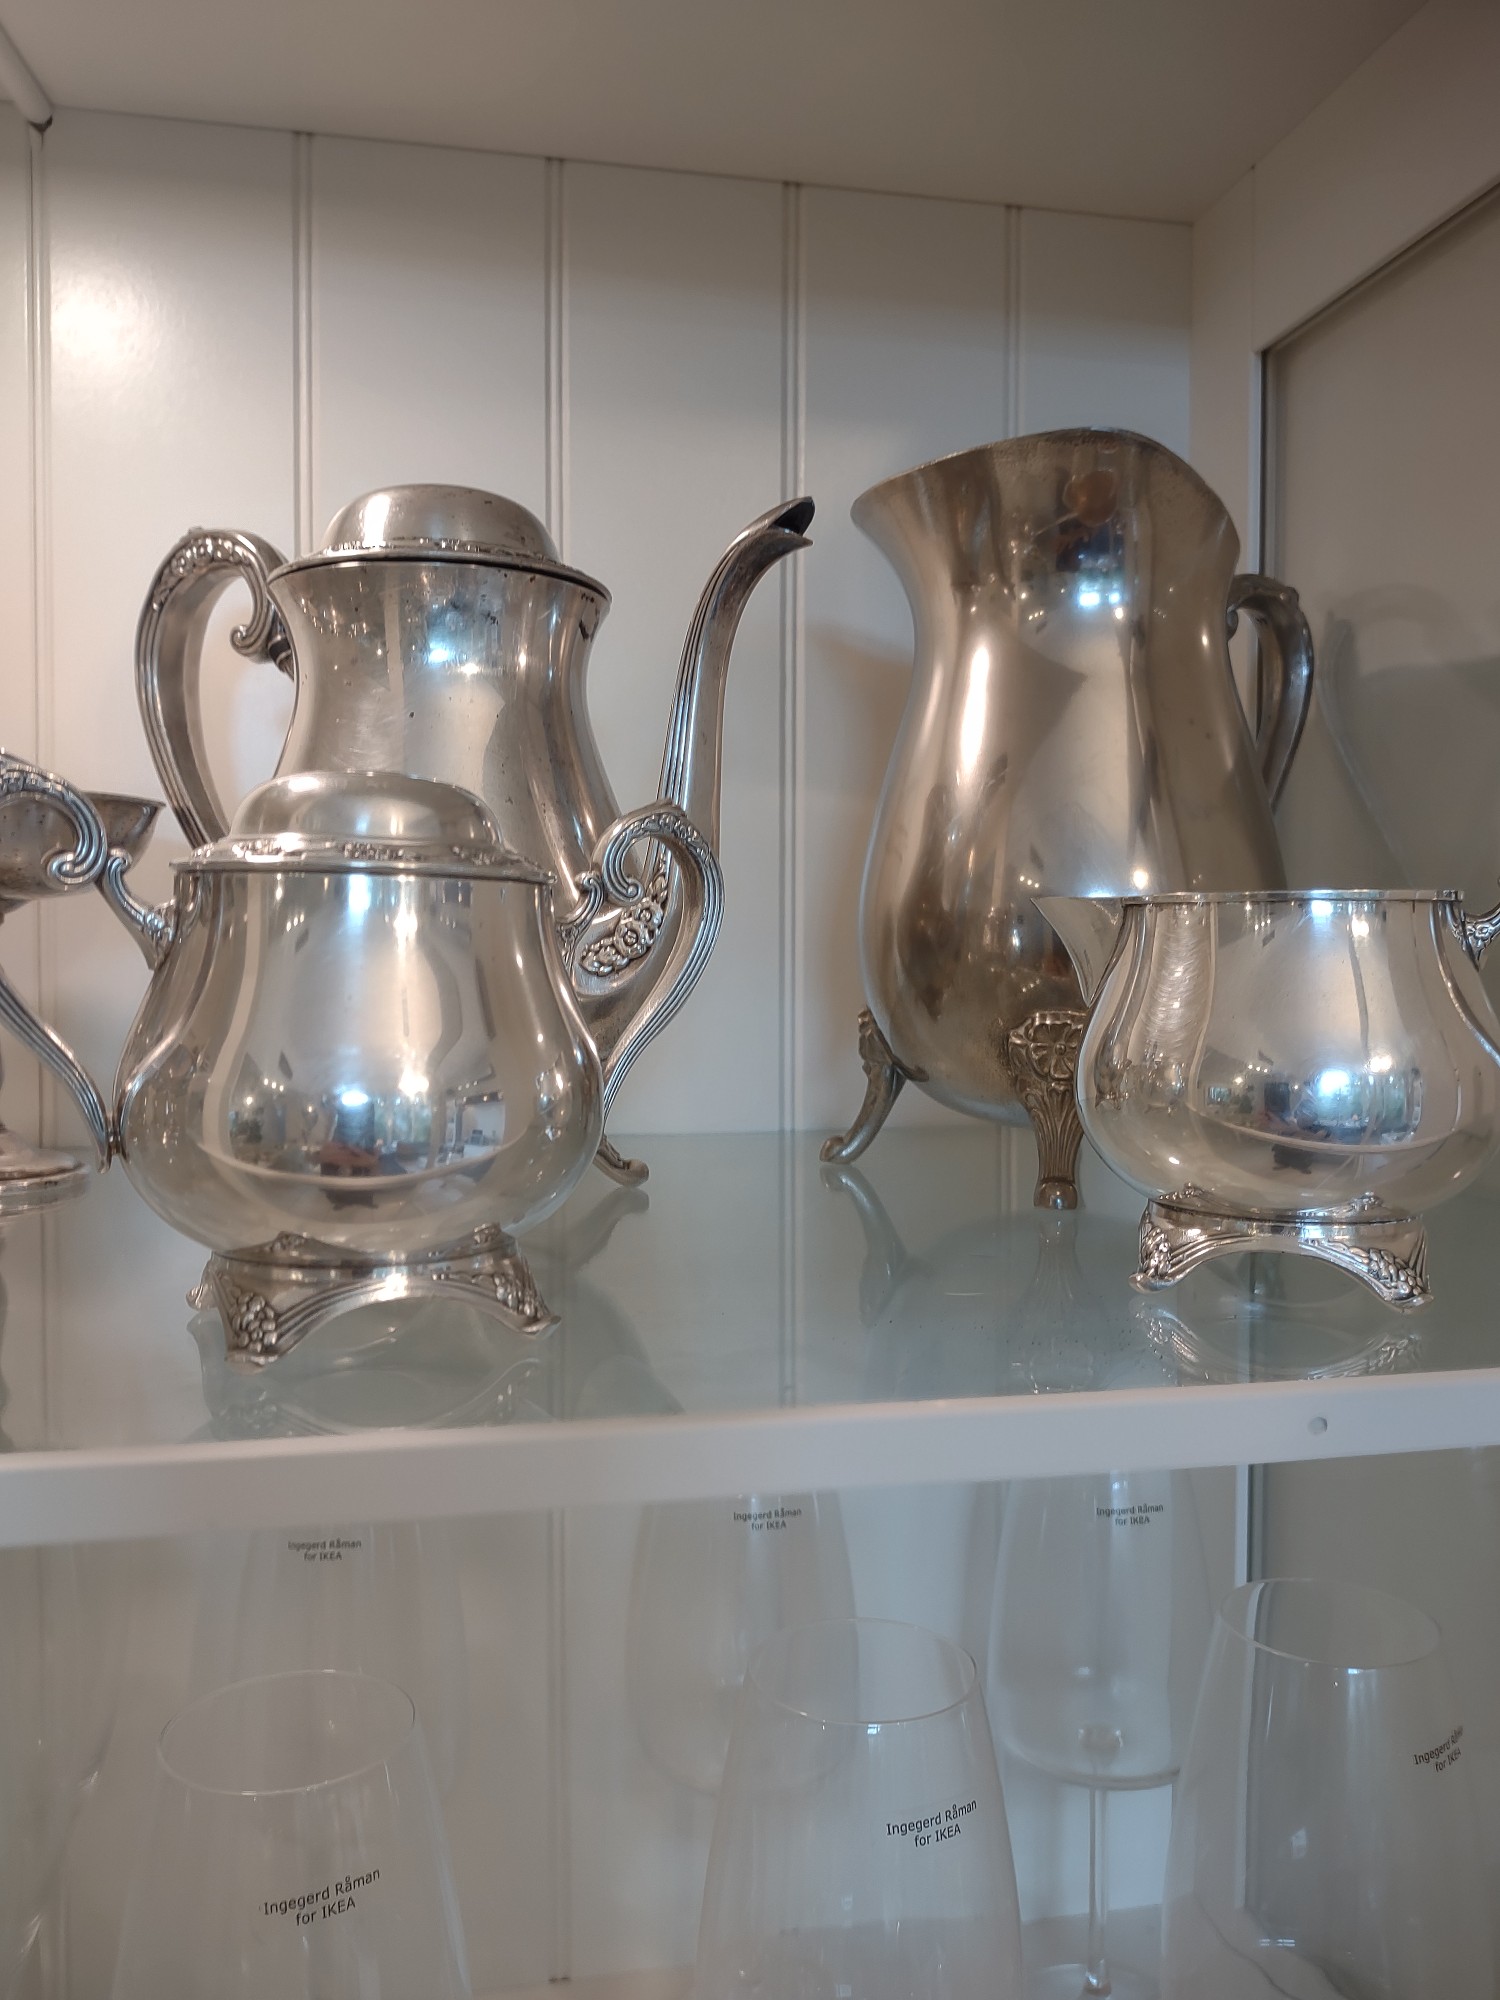 decoración y accesorios - Vendo hermoso juego de tetera Cafe en plata marca Oneida silversmith para sala